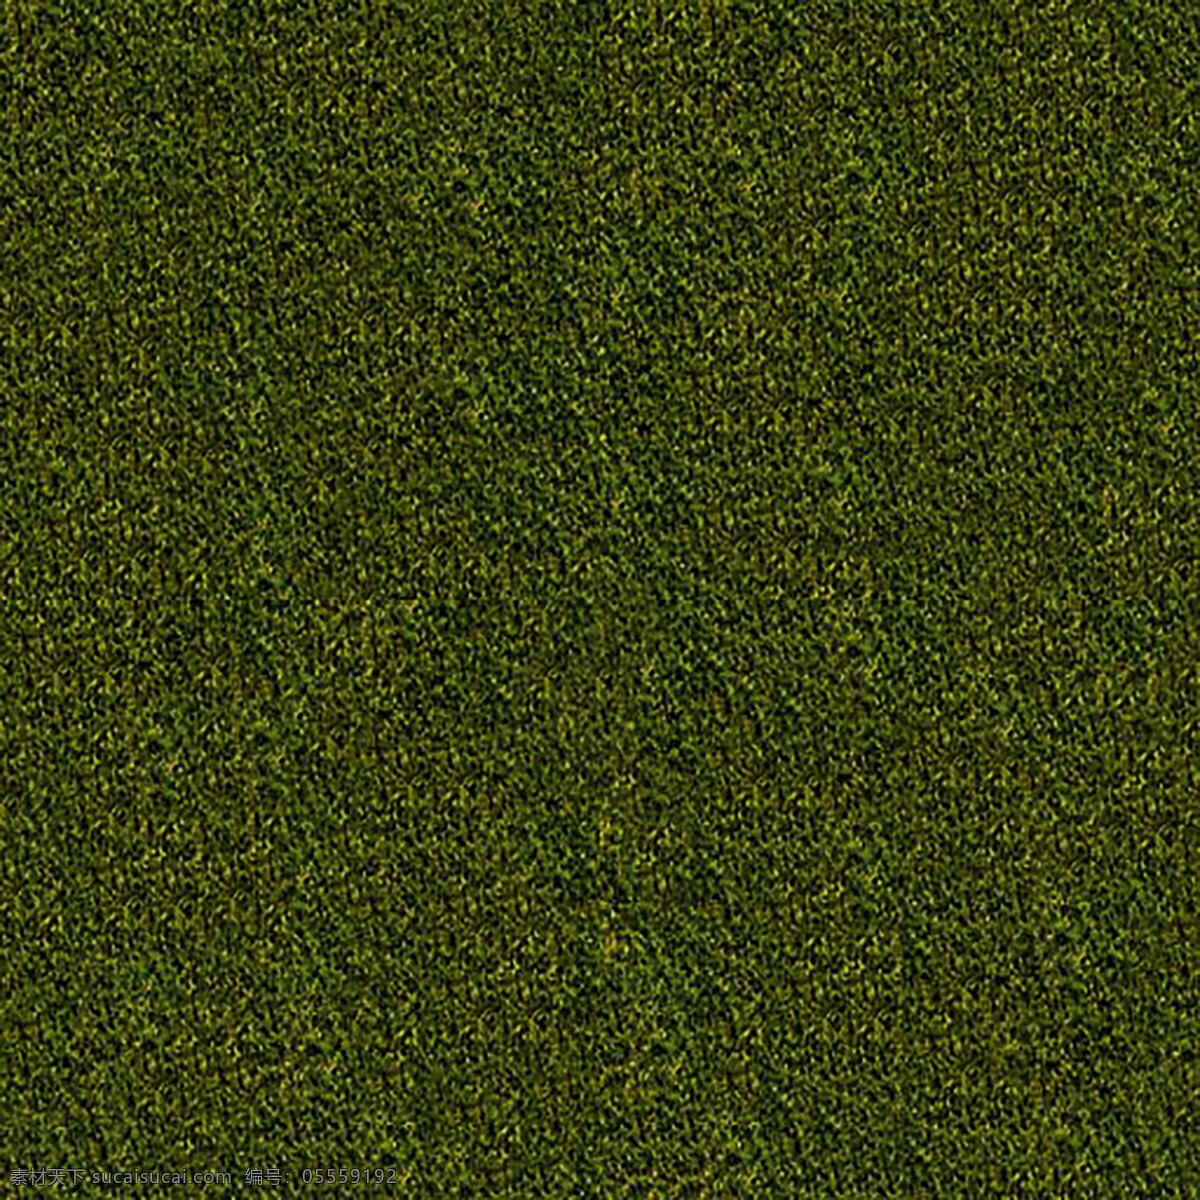 绿色植被 叶子 绿色 植物 草地 清新 生物世界 树木树叶 贴图 背景 生态 环保 自然 底纹边框 背景底纹